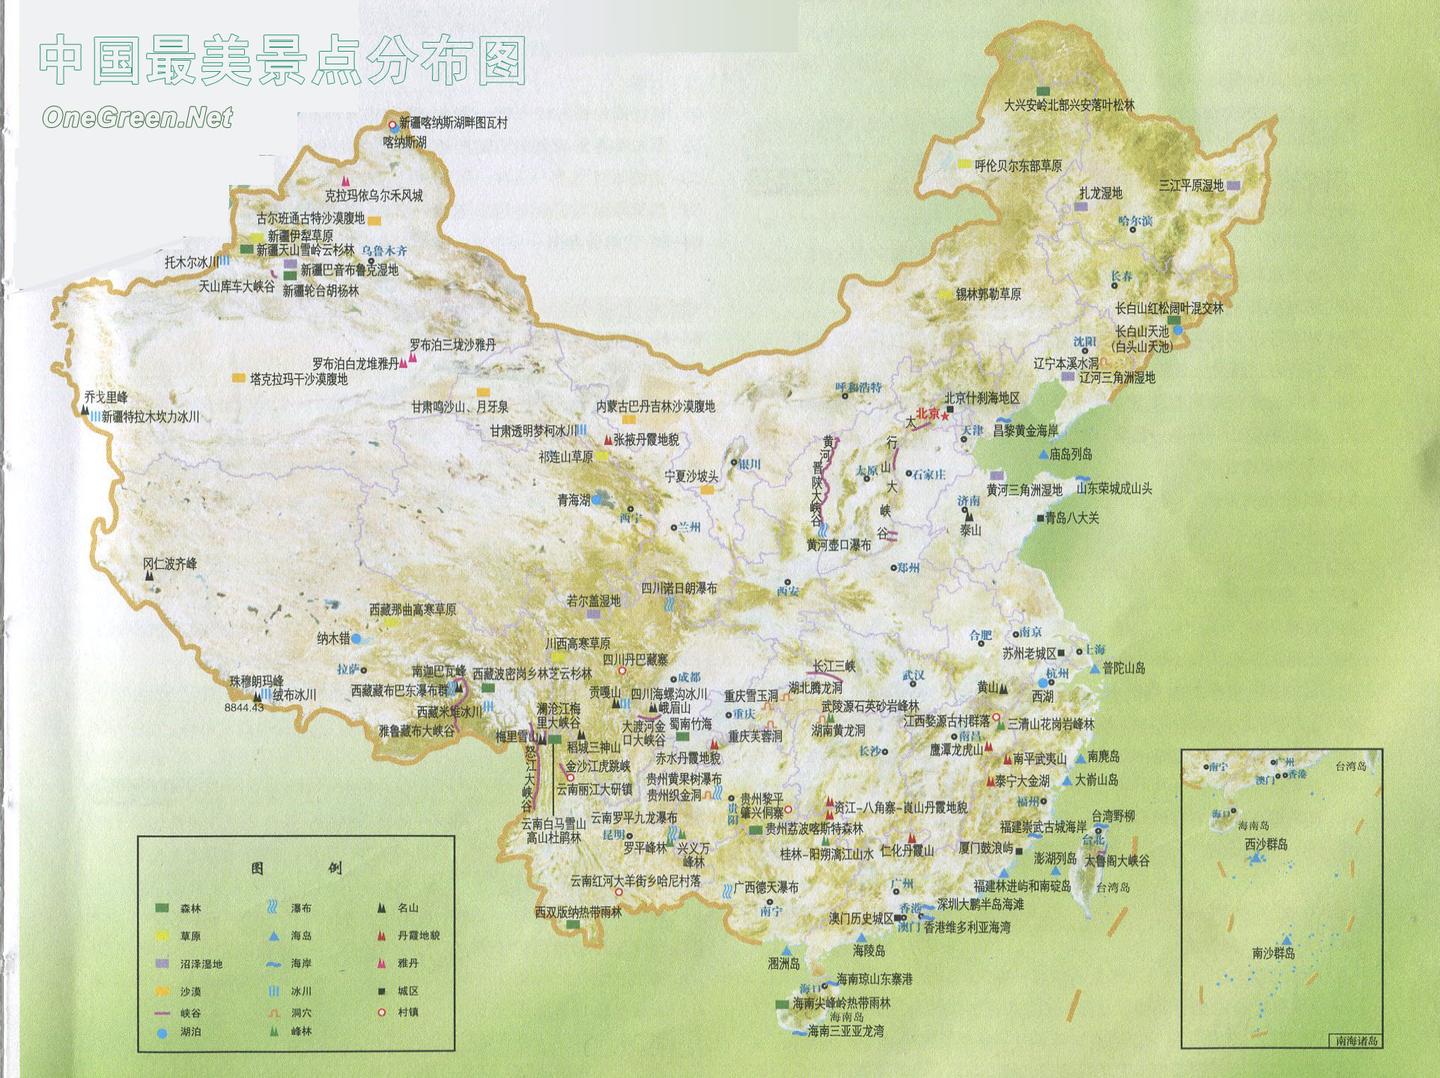 46 人 赞同了该文章 《中国国家地理》评选的中国最美的十大名山,五